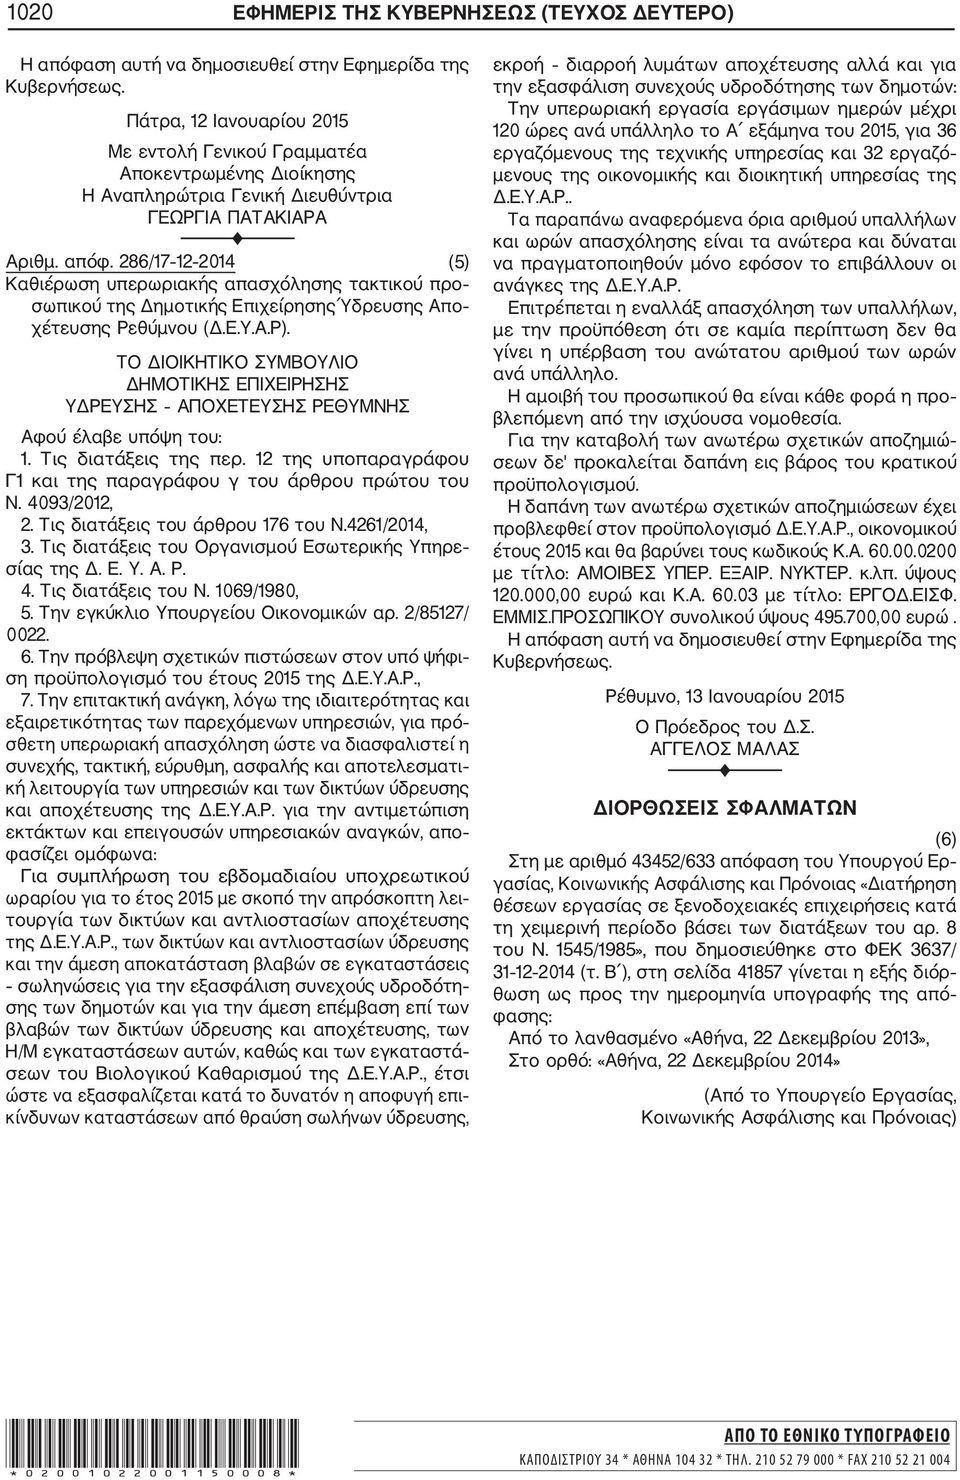 286/17 12 2014 (5) Καθιέρωση υπερωριακής απασχόλησης τακτικού προ σωπικού της Δημοτικής Επιχείρησης Ύδρευσης Απο χέτευσης Ρεθύμνου (Δ.Ε.Υ.Α.Ρ).